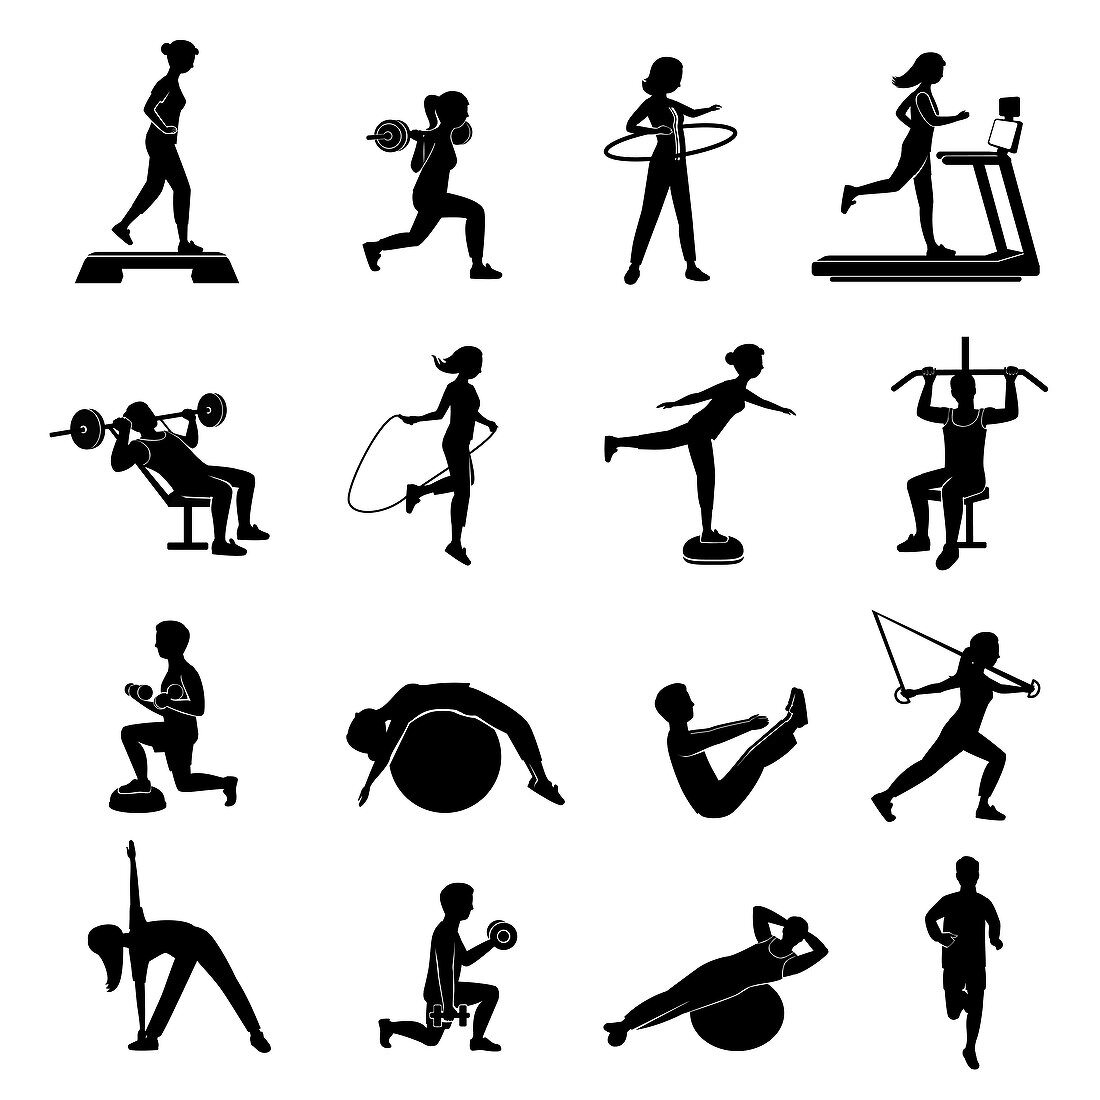 Exercise icons, illustration